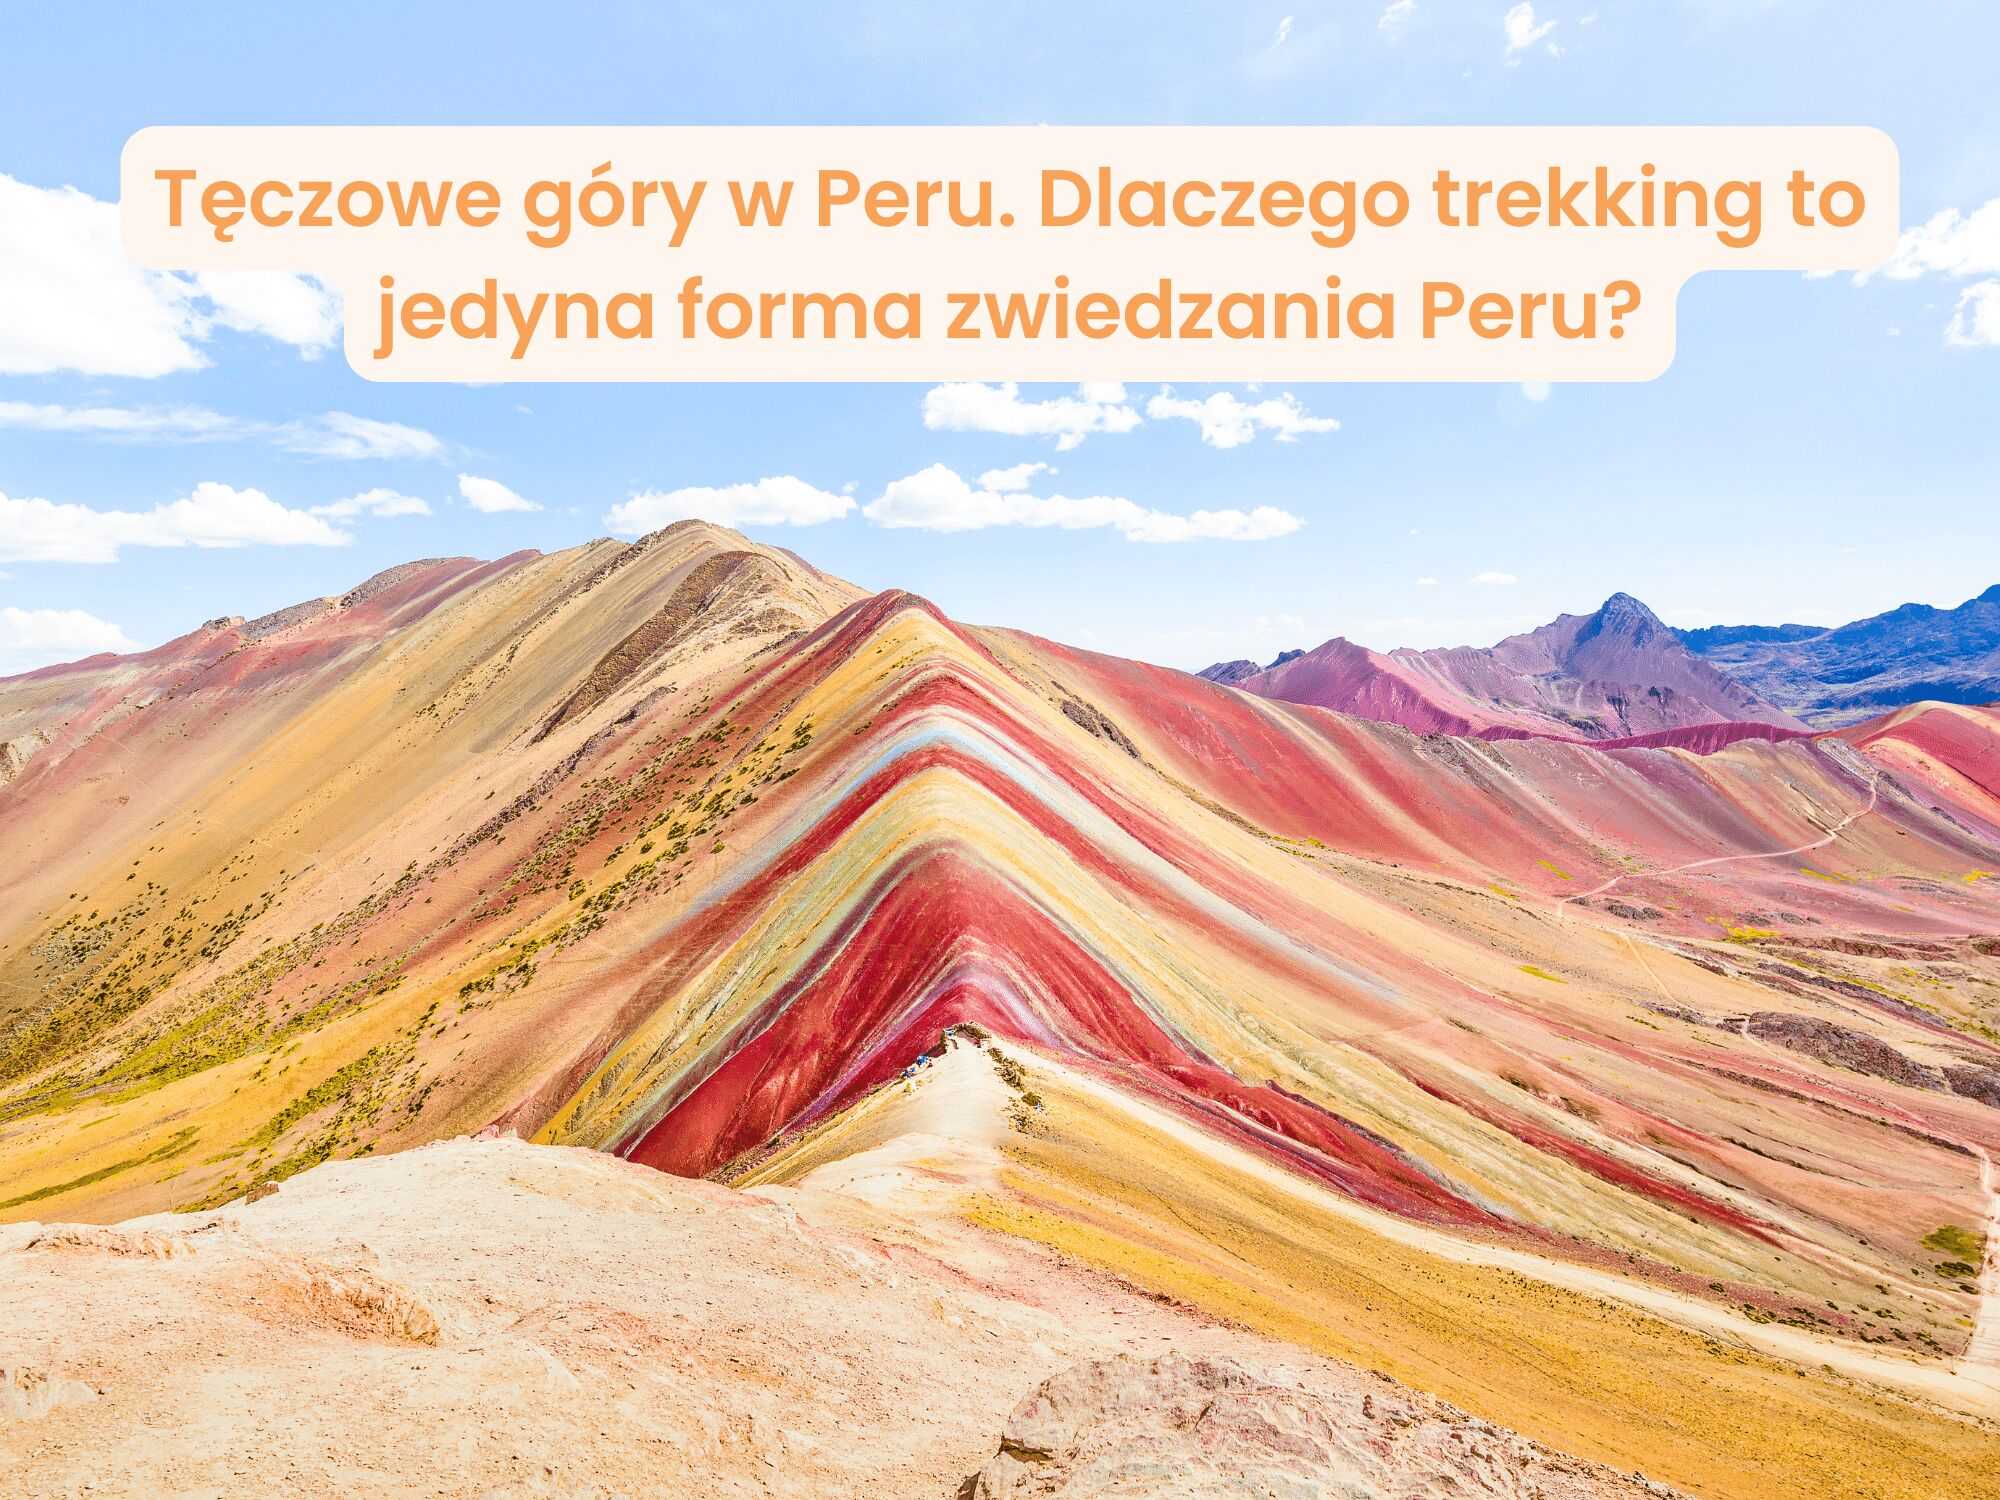 Tęczowe góry w Peru. Dlaczego trekking to jedyna forma zwiedzania Peru? - blog 4challenge.org